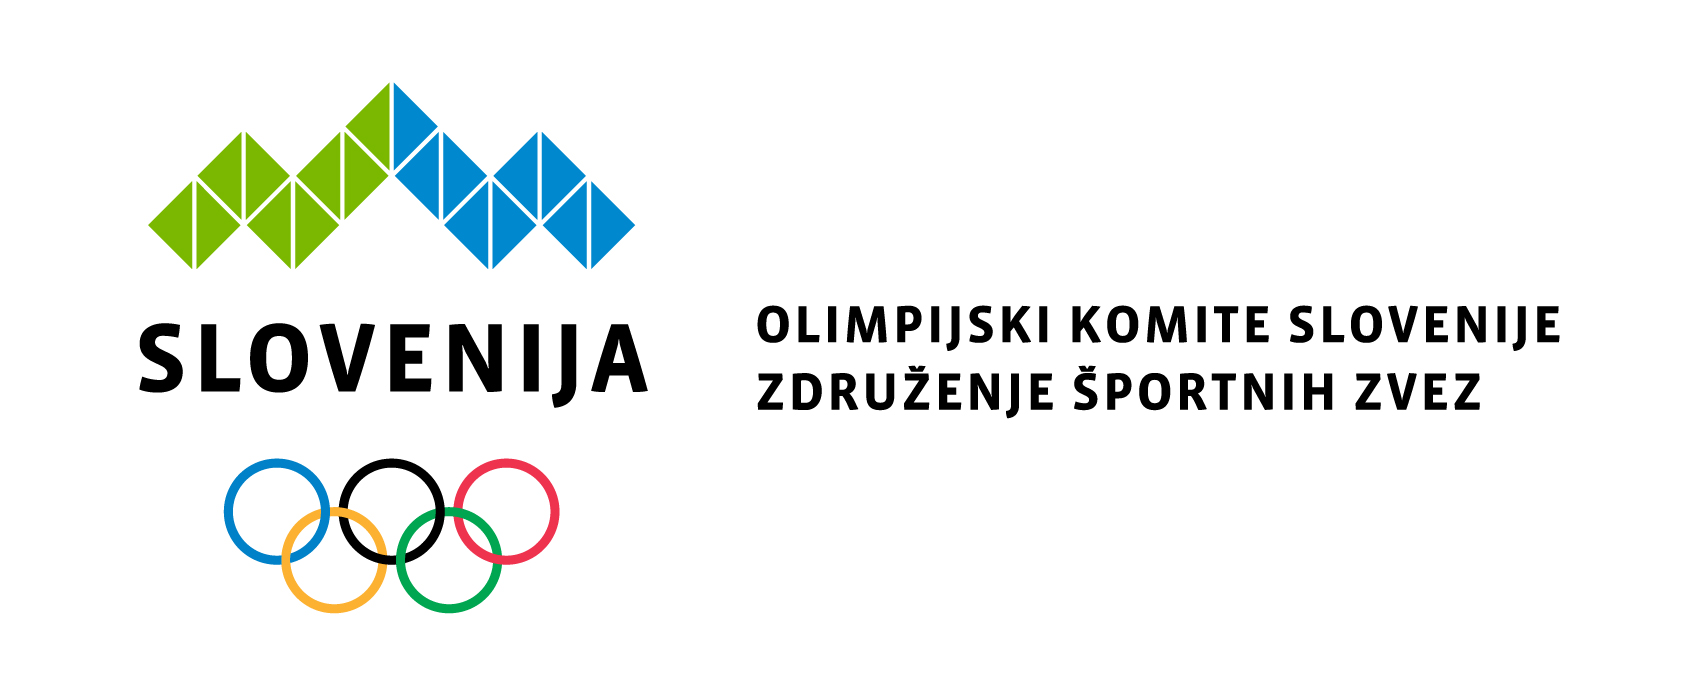 Objavljen Javni razpis za izbor izvajalcev letnega programa športa na državni ravni v Republiki Sloveniji v letu 2021